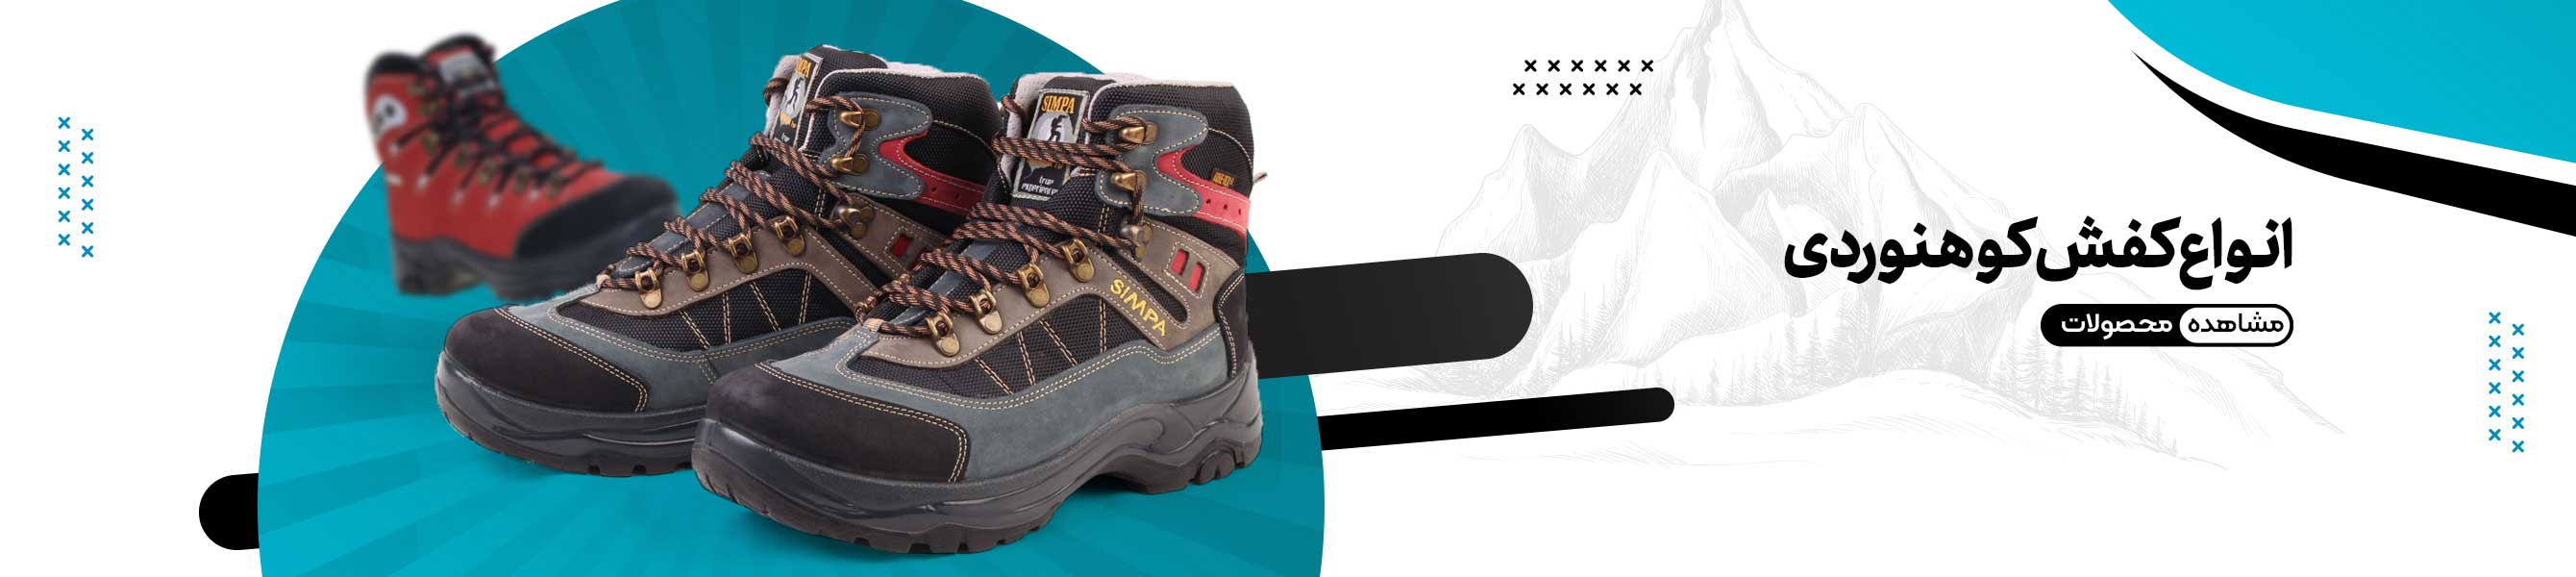 خرید و قیمت کفش کوهنوردی با بهترین قیمت